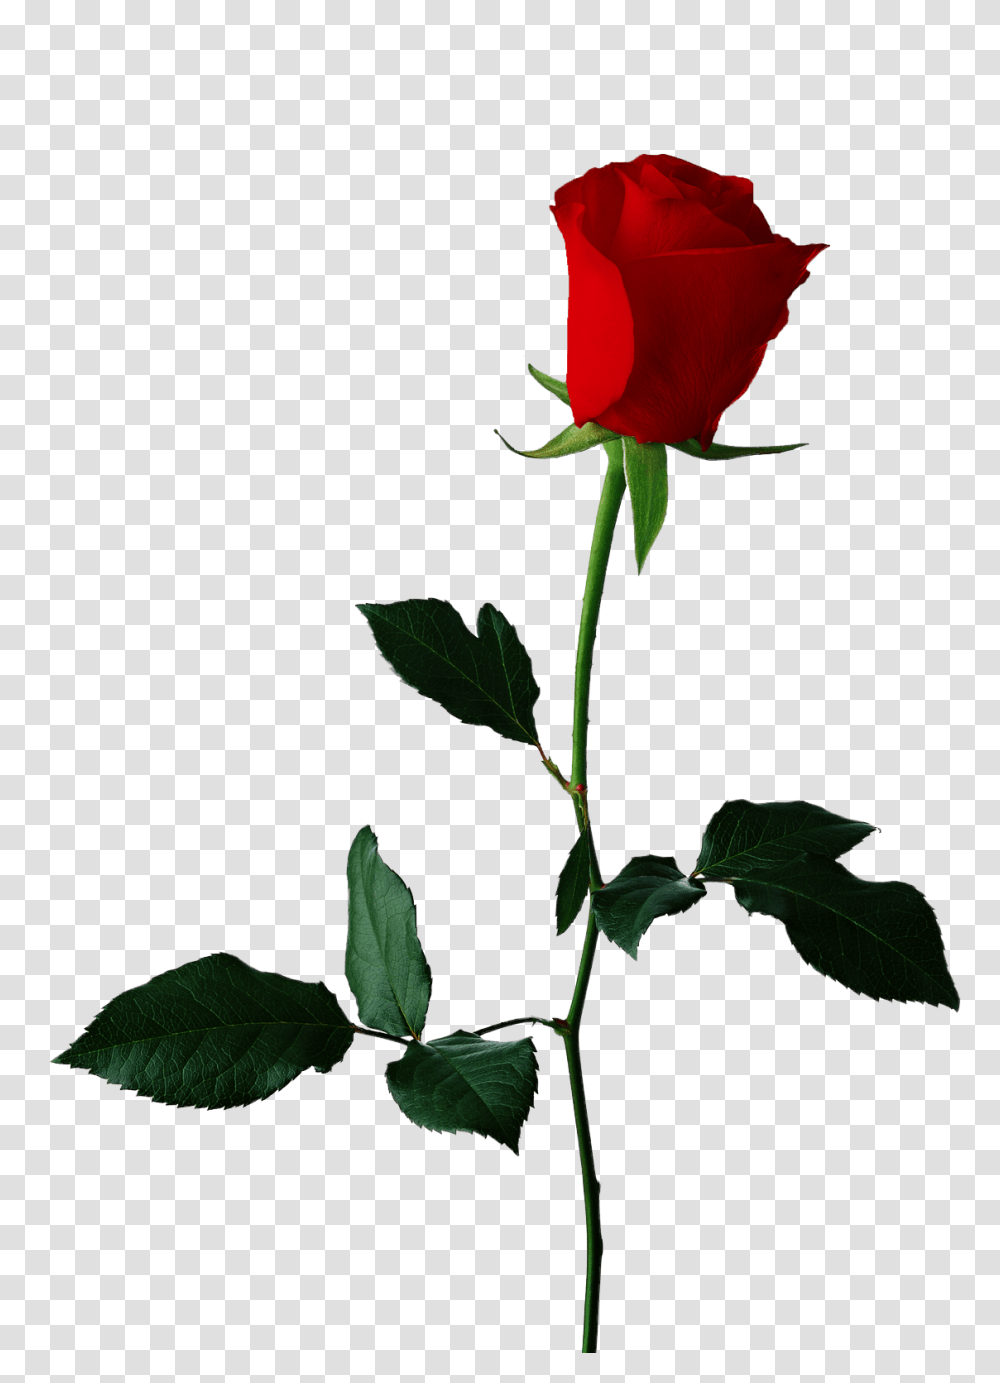 Single Red Rose Background, Plant, Flower, Blossom, Leaf Transparent Png